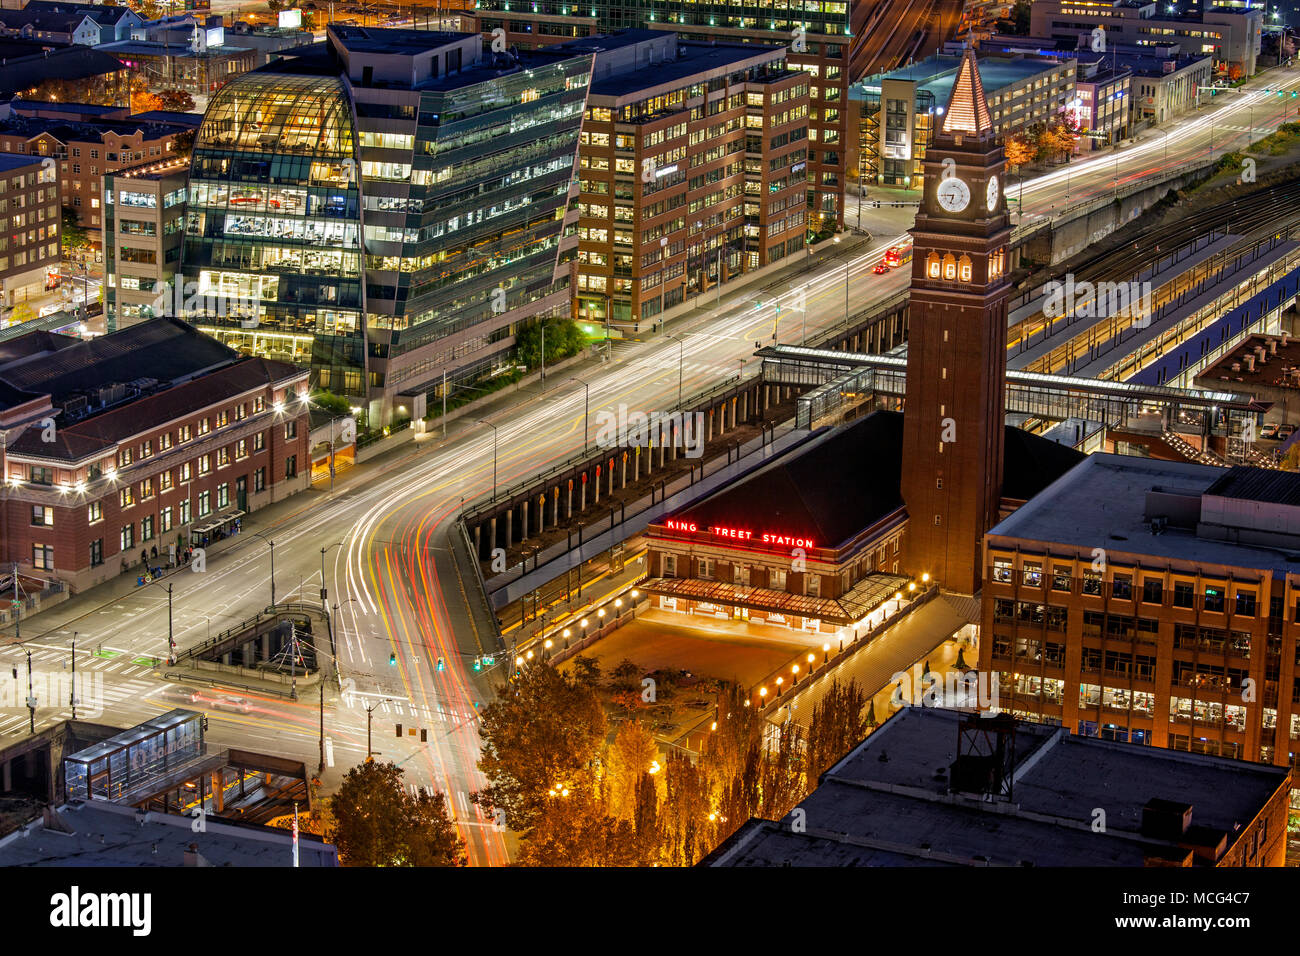 WA 14265-00 ... WASHINGTON - Blick auf die King Street Station von der Aussichtsplattform des Smith Tower Stockfoto